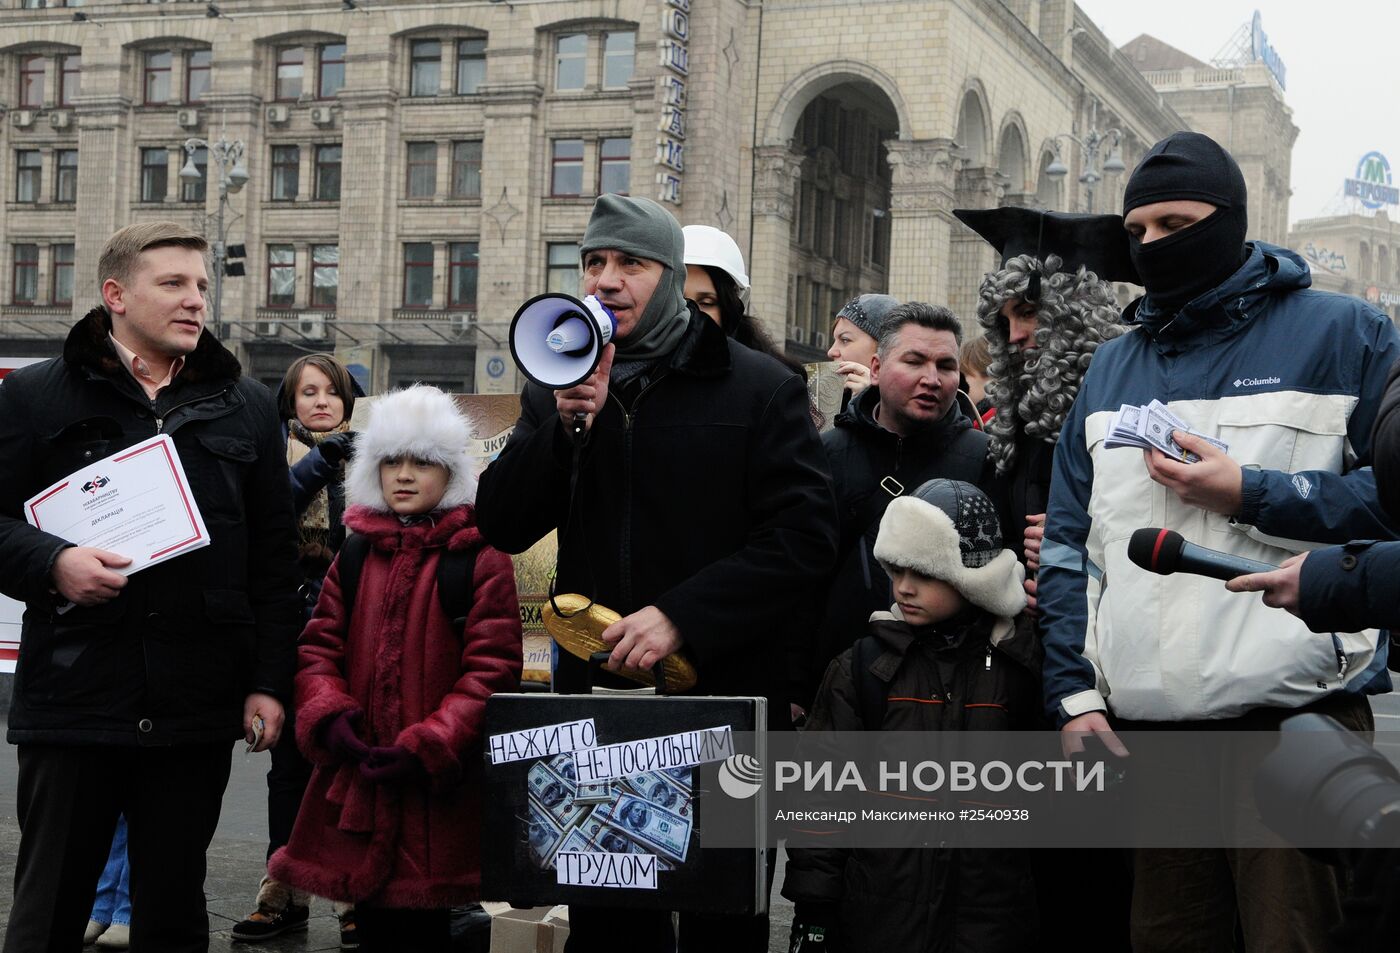 Уличная акция "Безвзяточная гривна - взяточнику" в Киеве